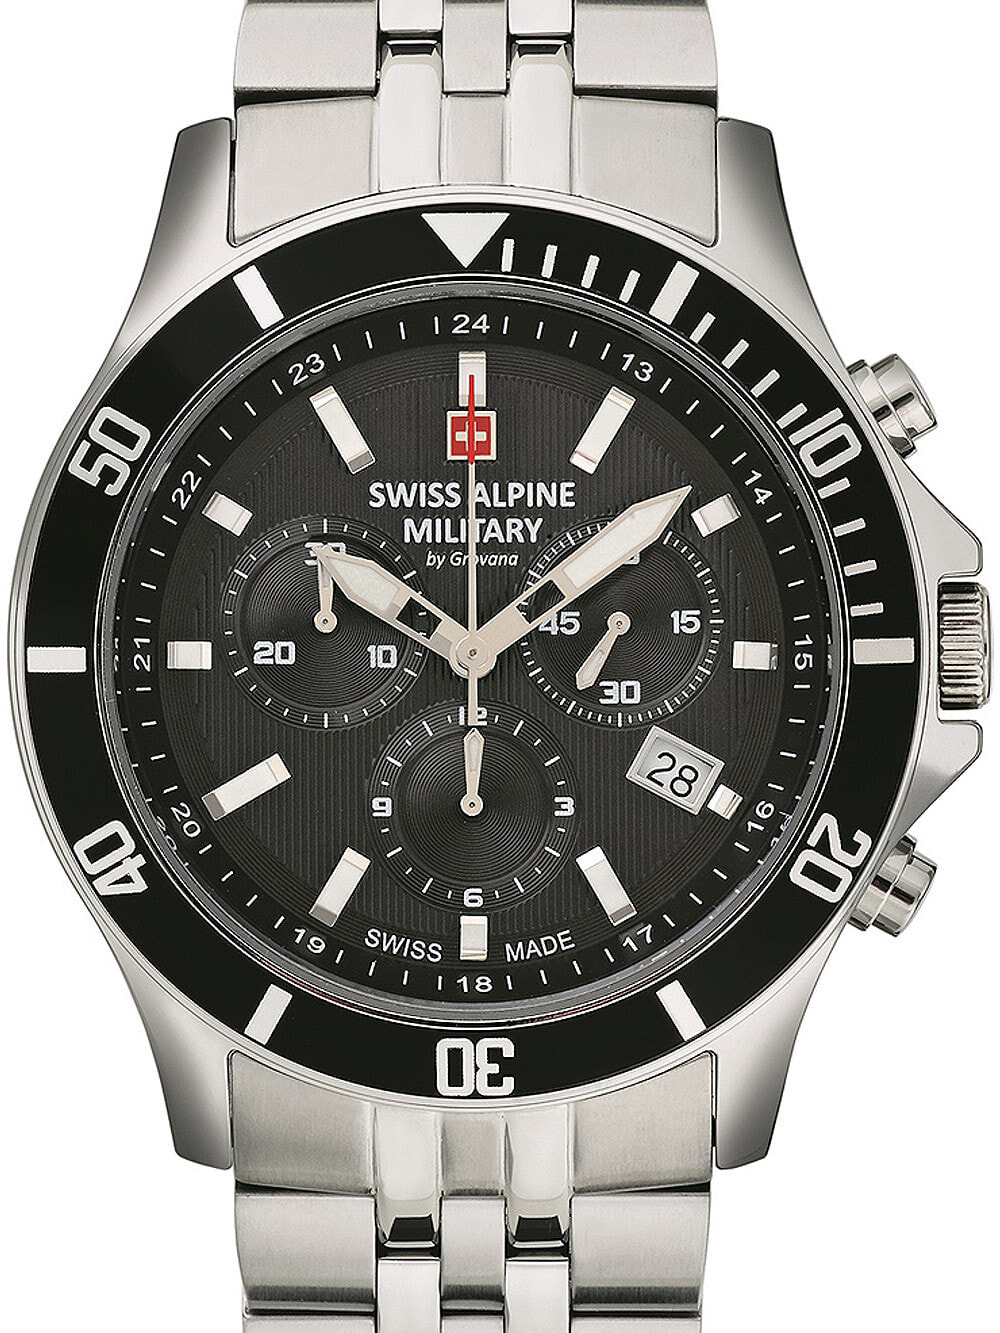 Мужские наручные часы с серебряным браслетом Swiss Alpine Military 7022.9137 chronograph 42mm 10ATM